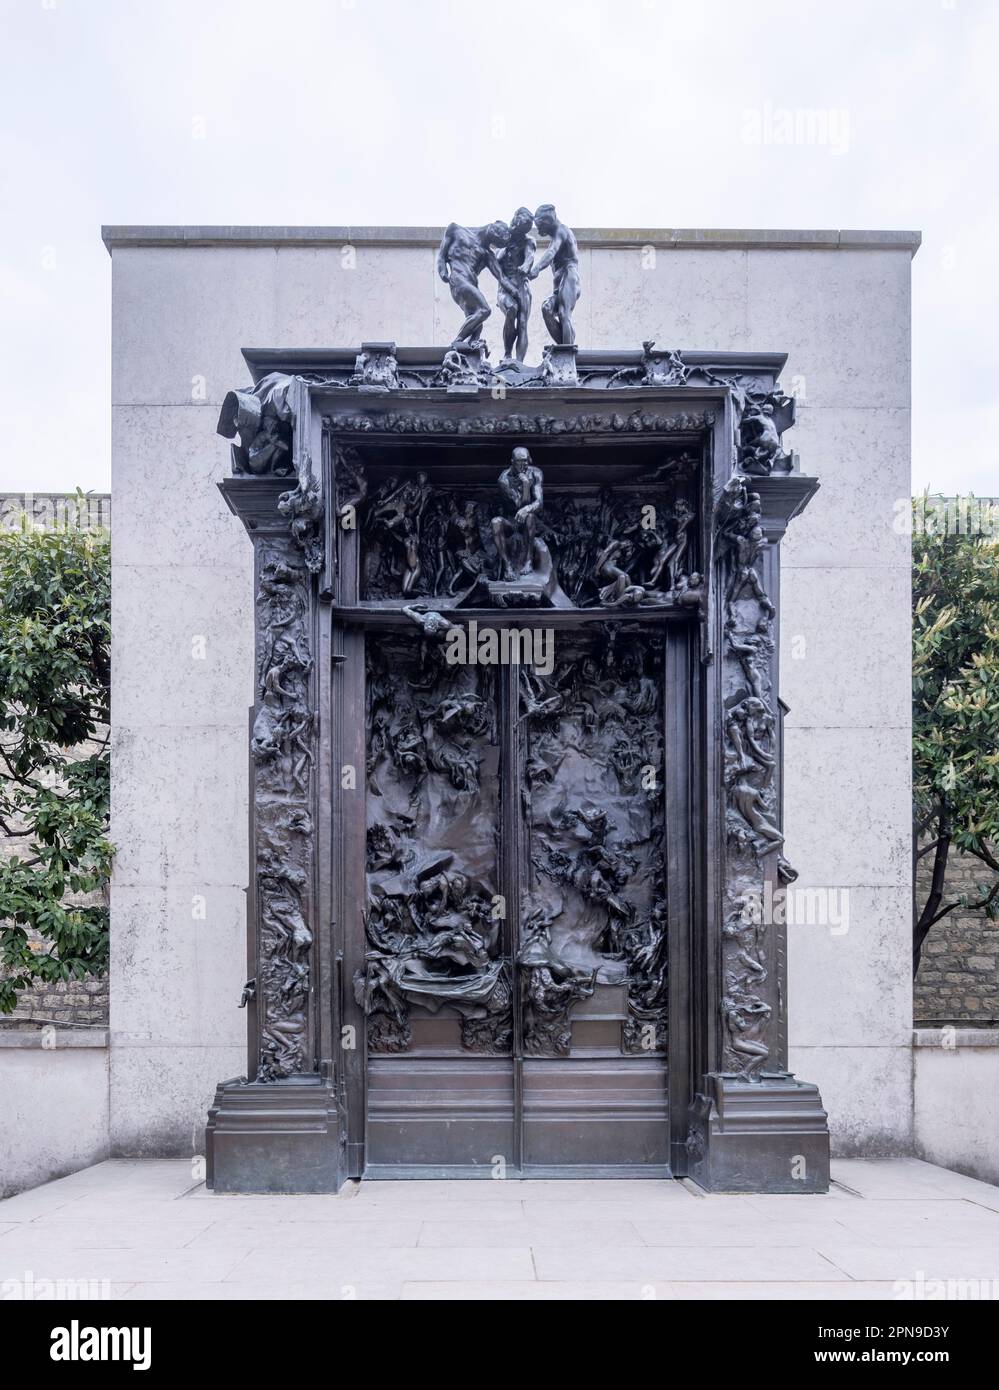 Les portes de l'Enfer (la porte de l'Enfer), Musée Rodin, Prius, France Banque D'Images